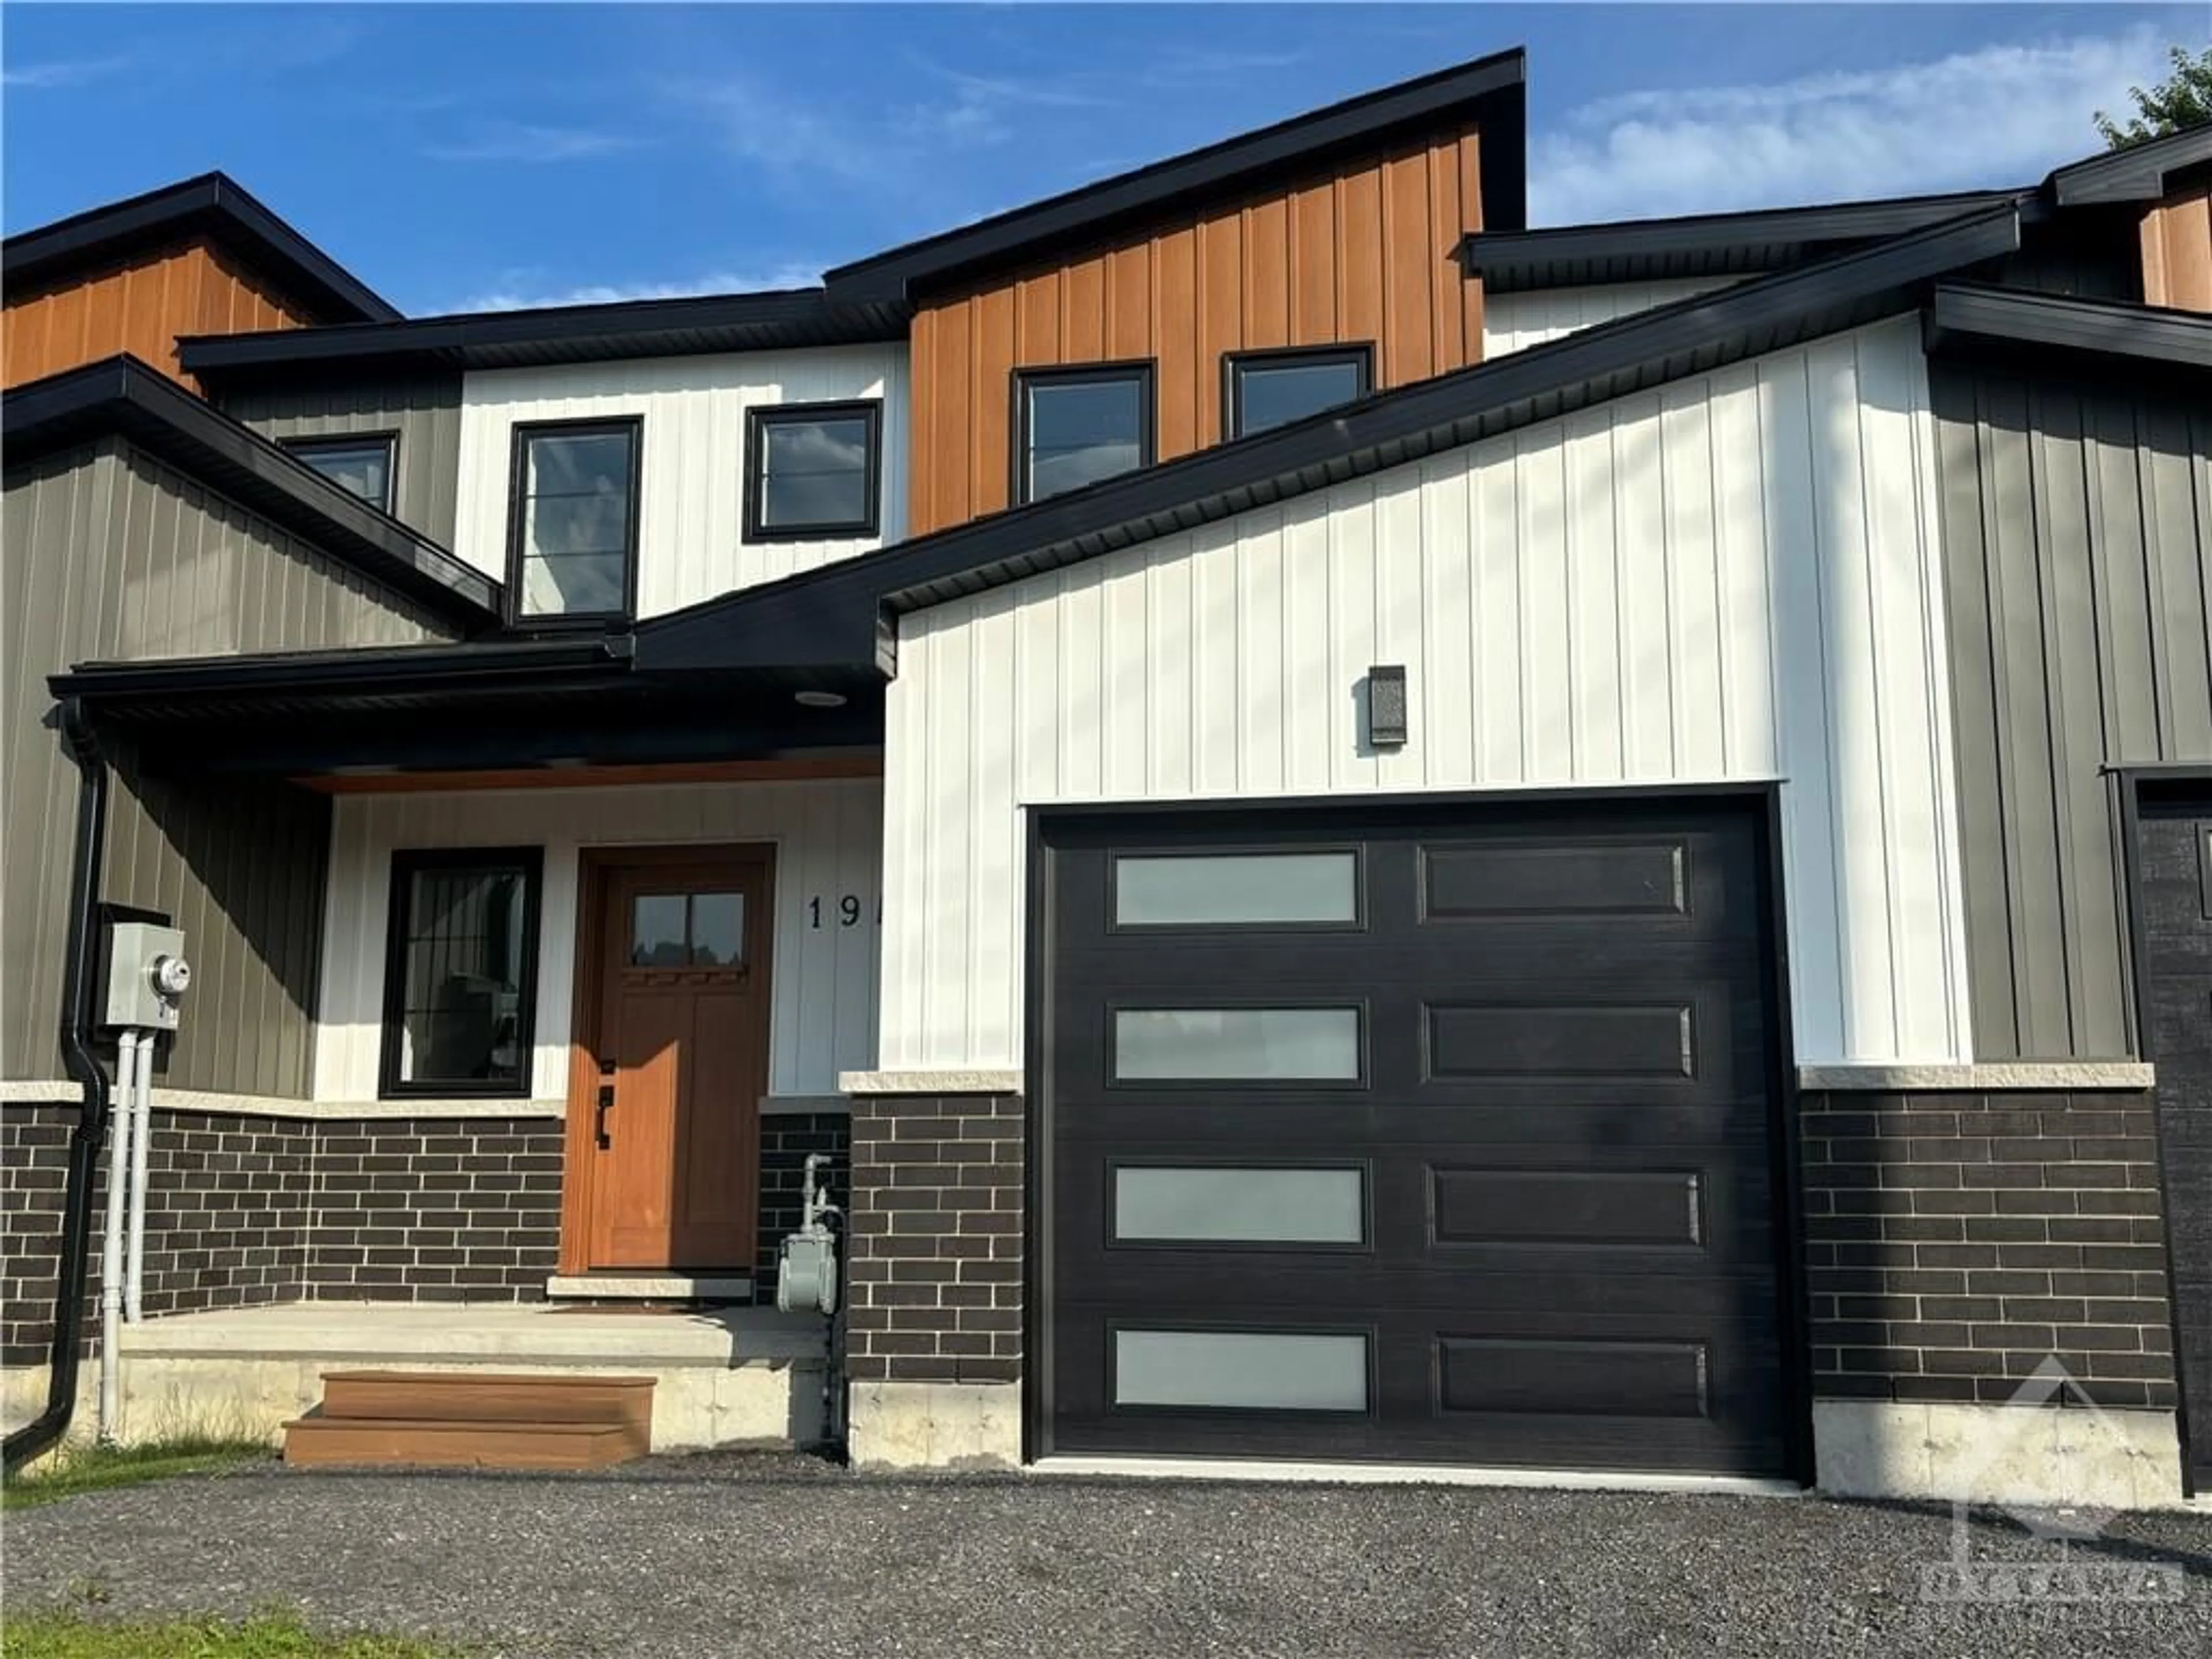 Home with brick exterior material for 19B DUNDAS St, Iroquois Ontario K0E 1K0